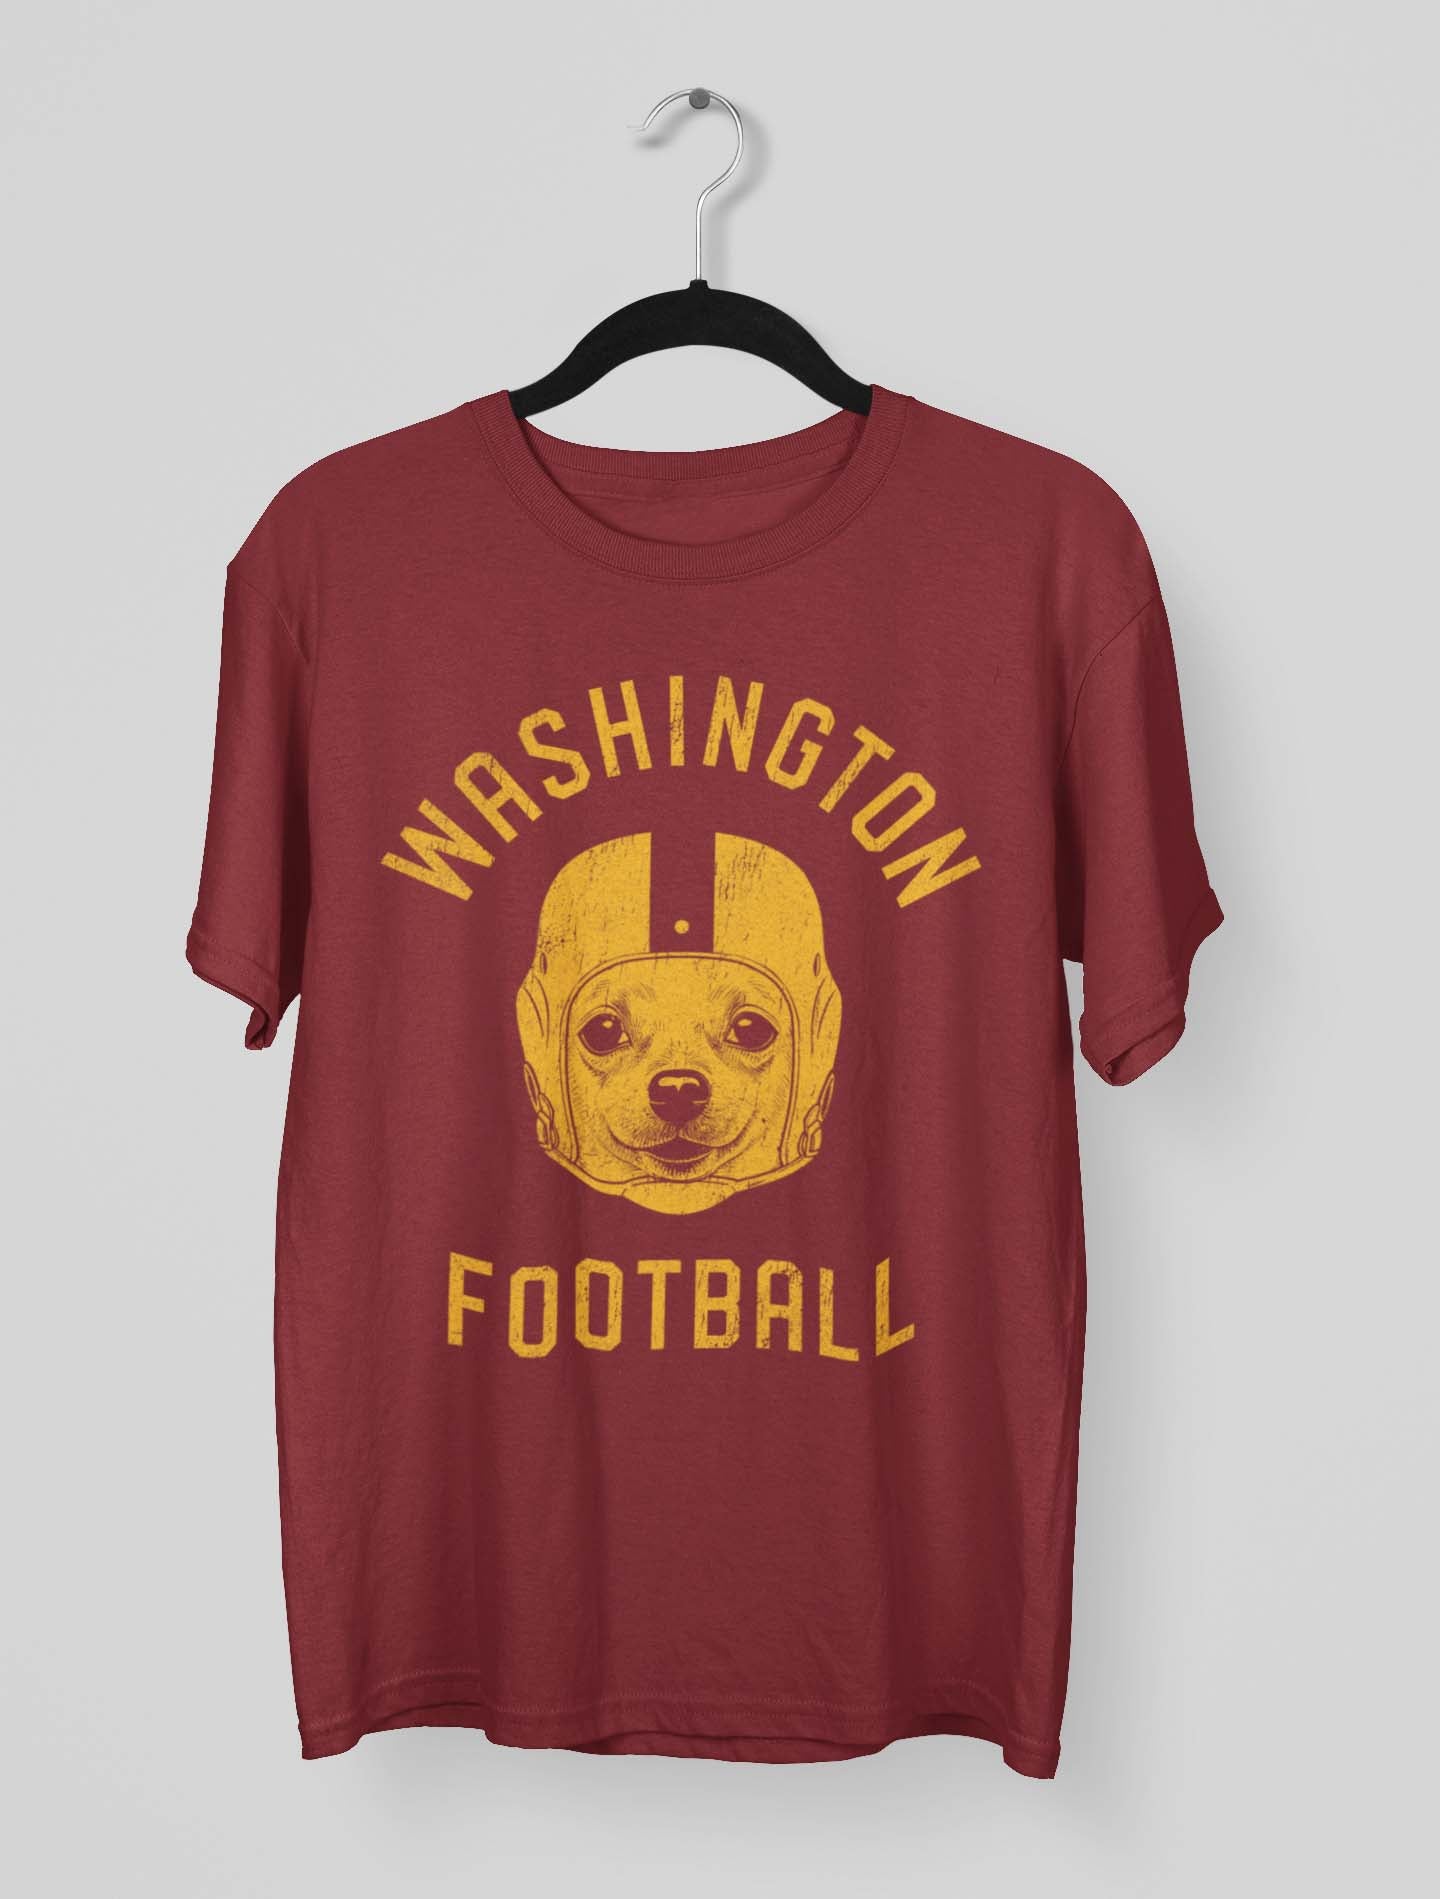 Washington Football Chihuahua T-Shirt